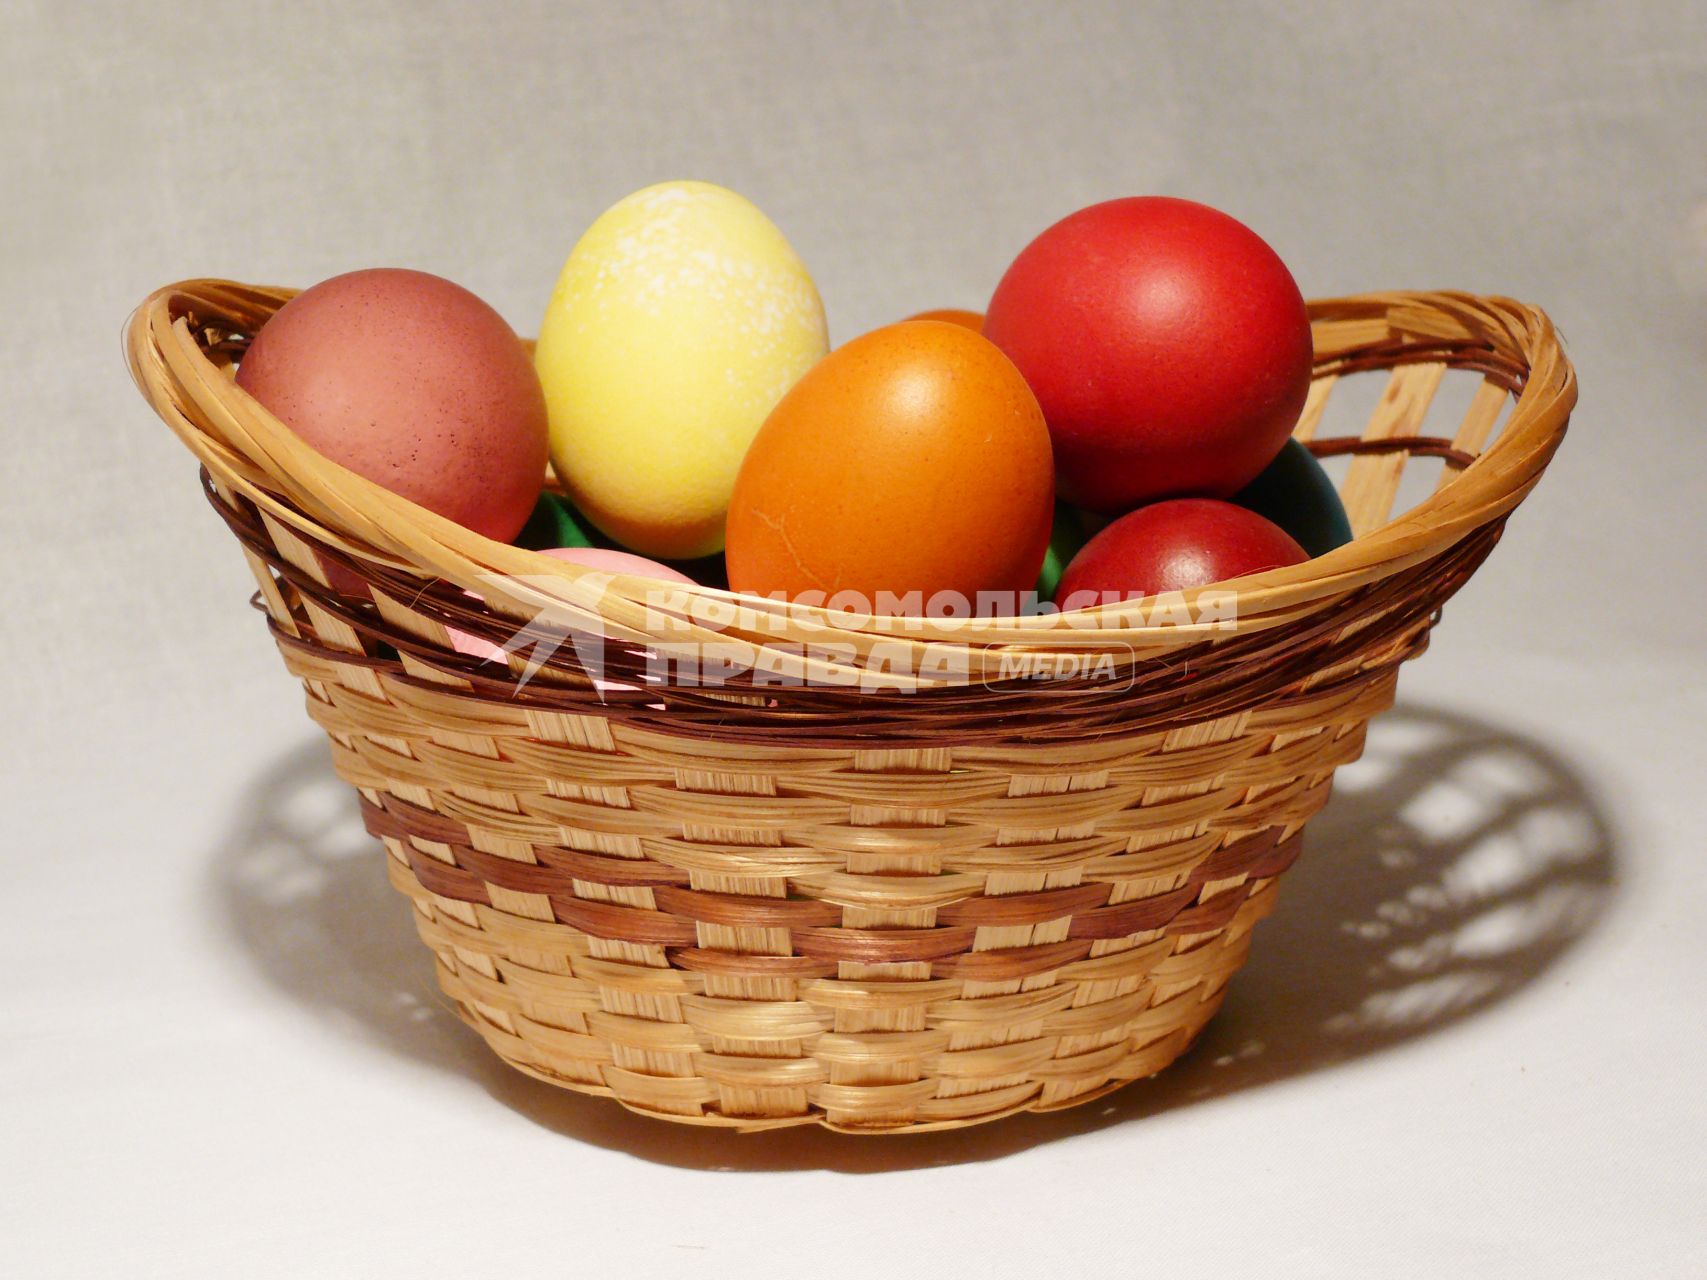 Пасха. Крашеные яйца в плетеной корзинке